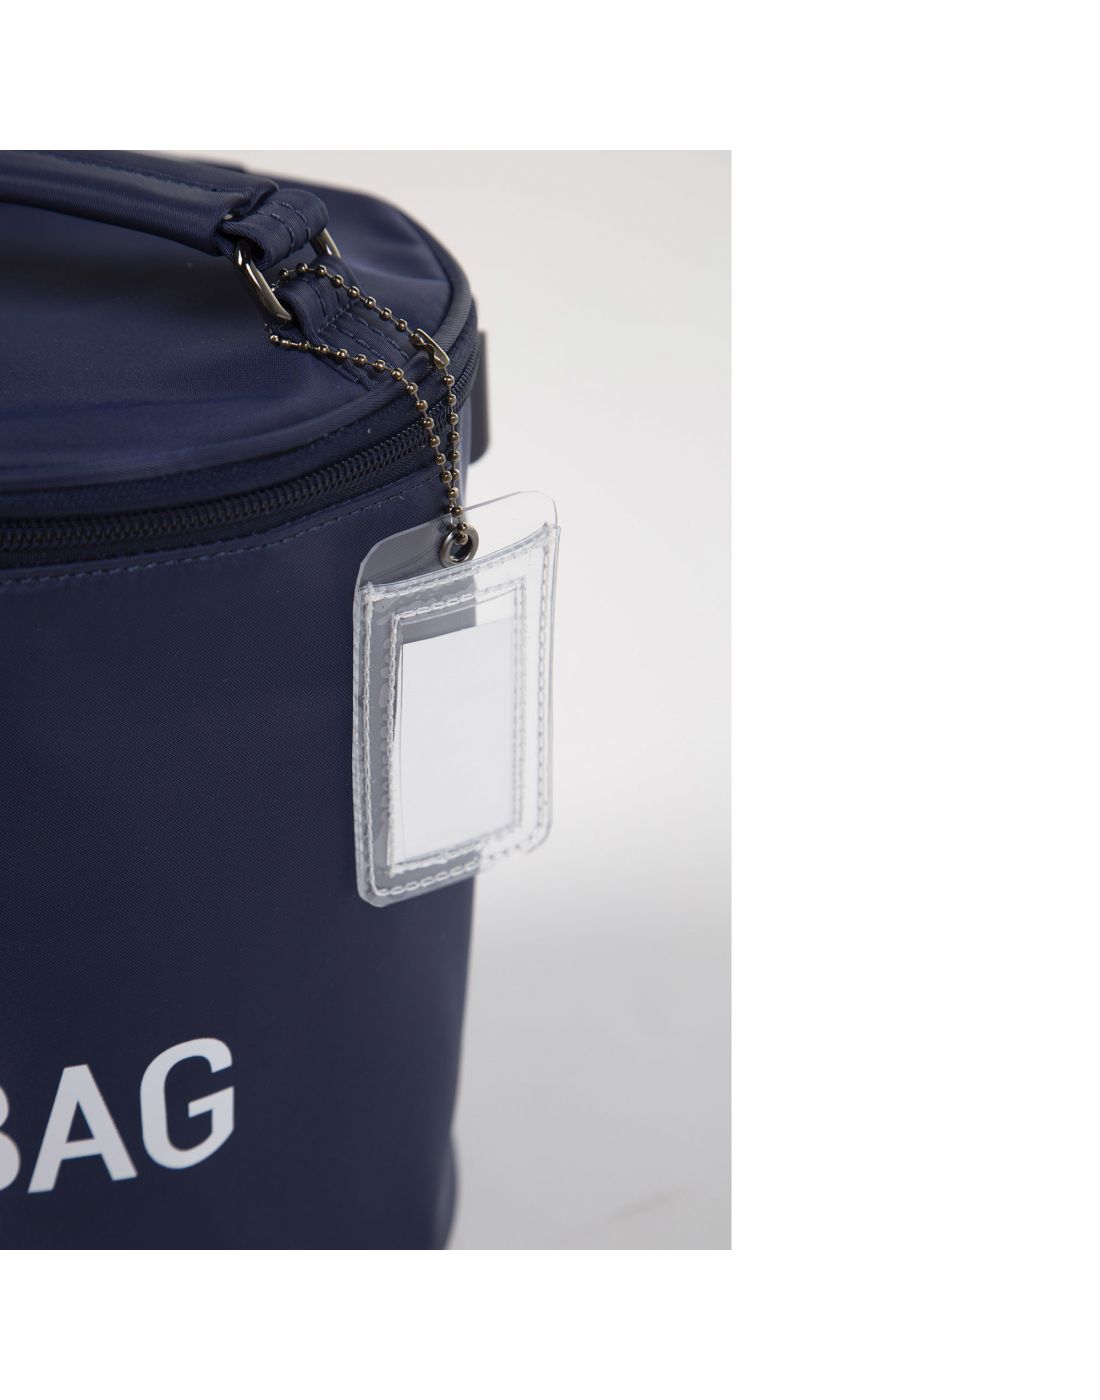 Τσάντα Childhome My Lunch Bag με Ισοθερμική Επένδυση Navy/White